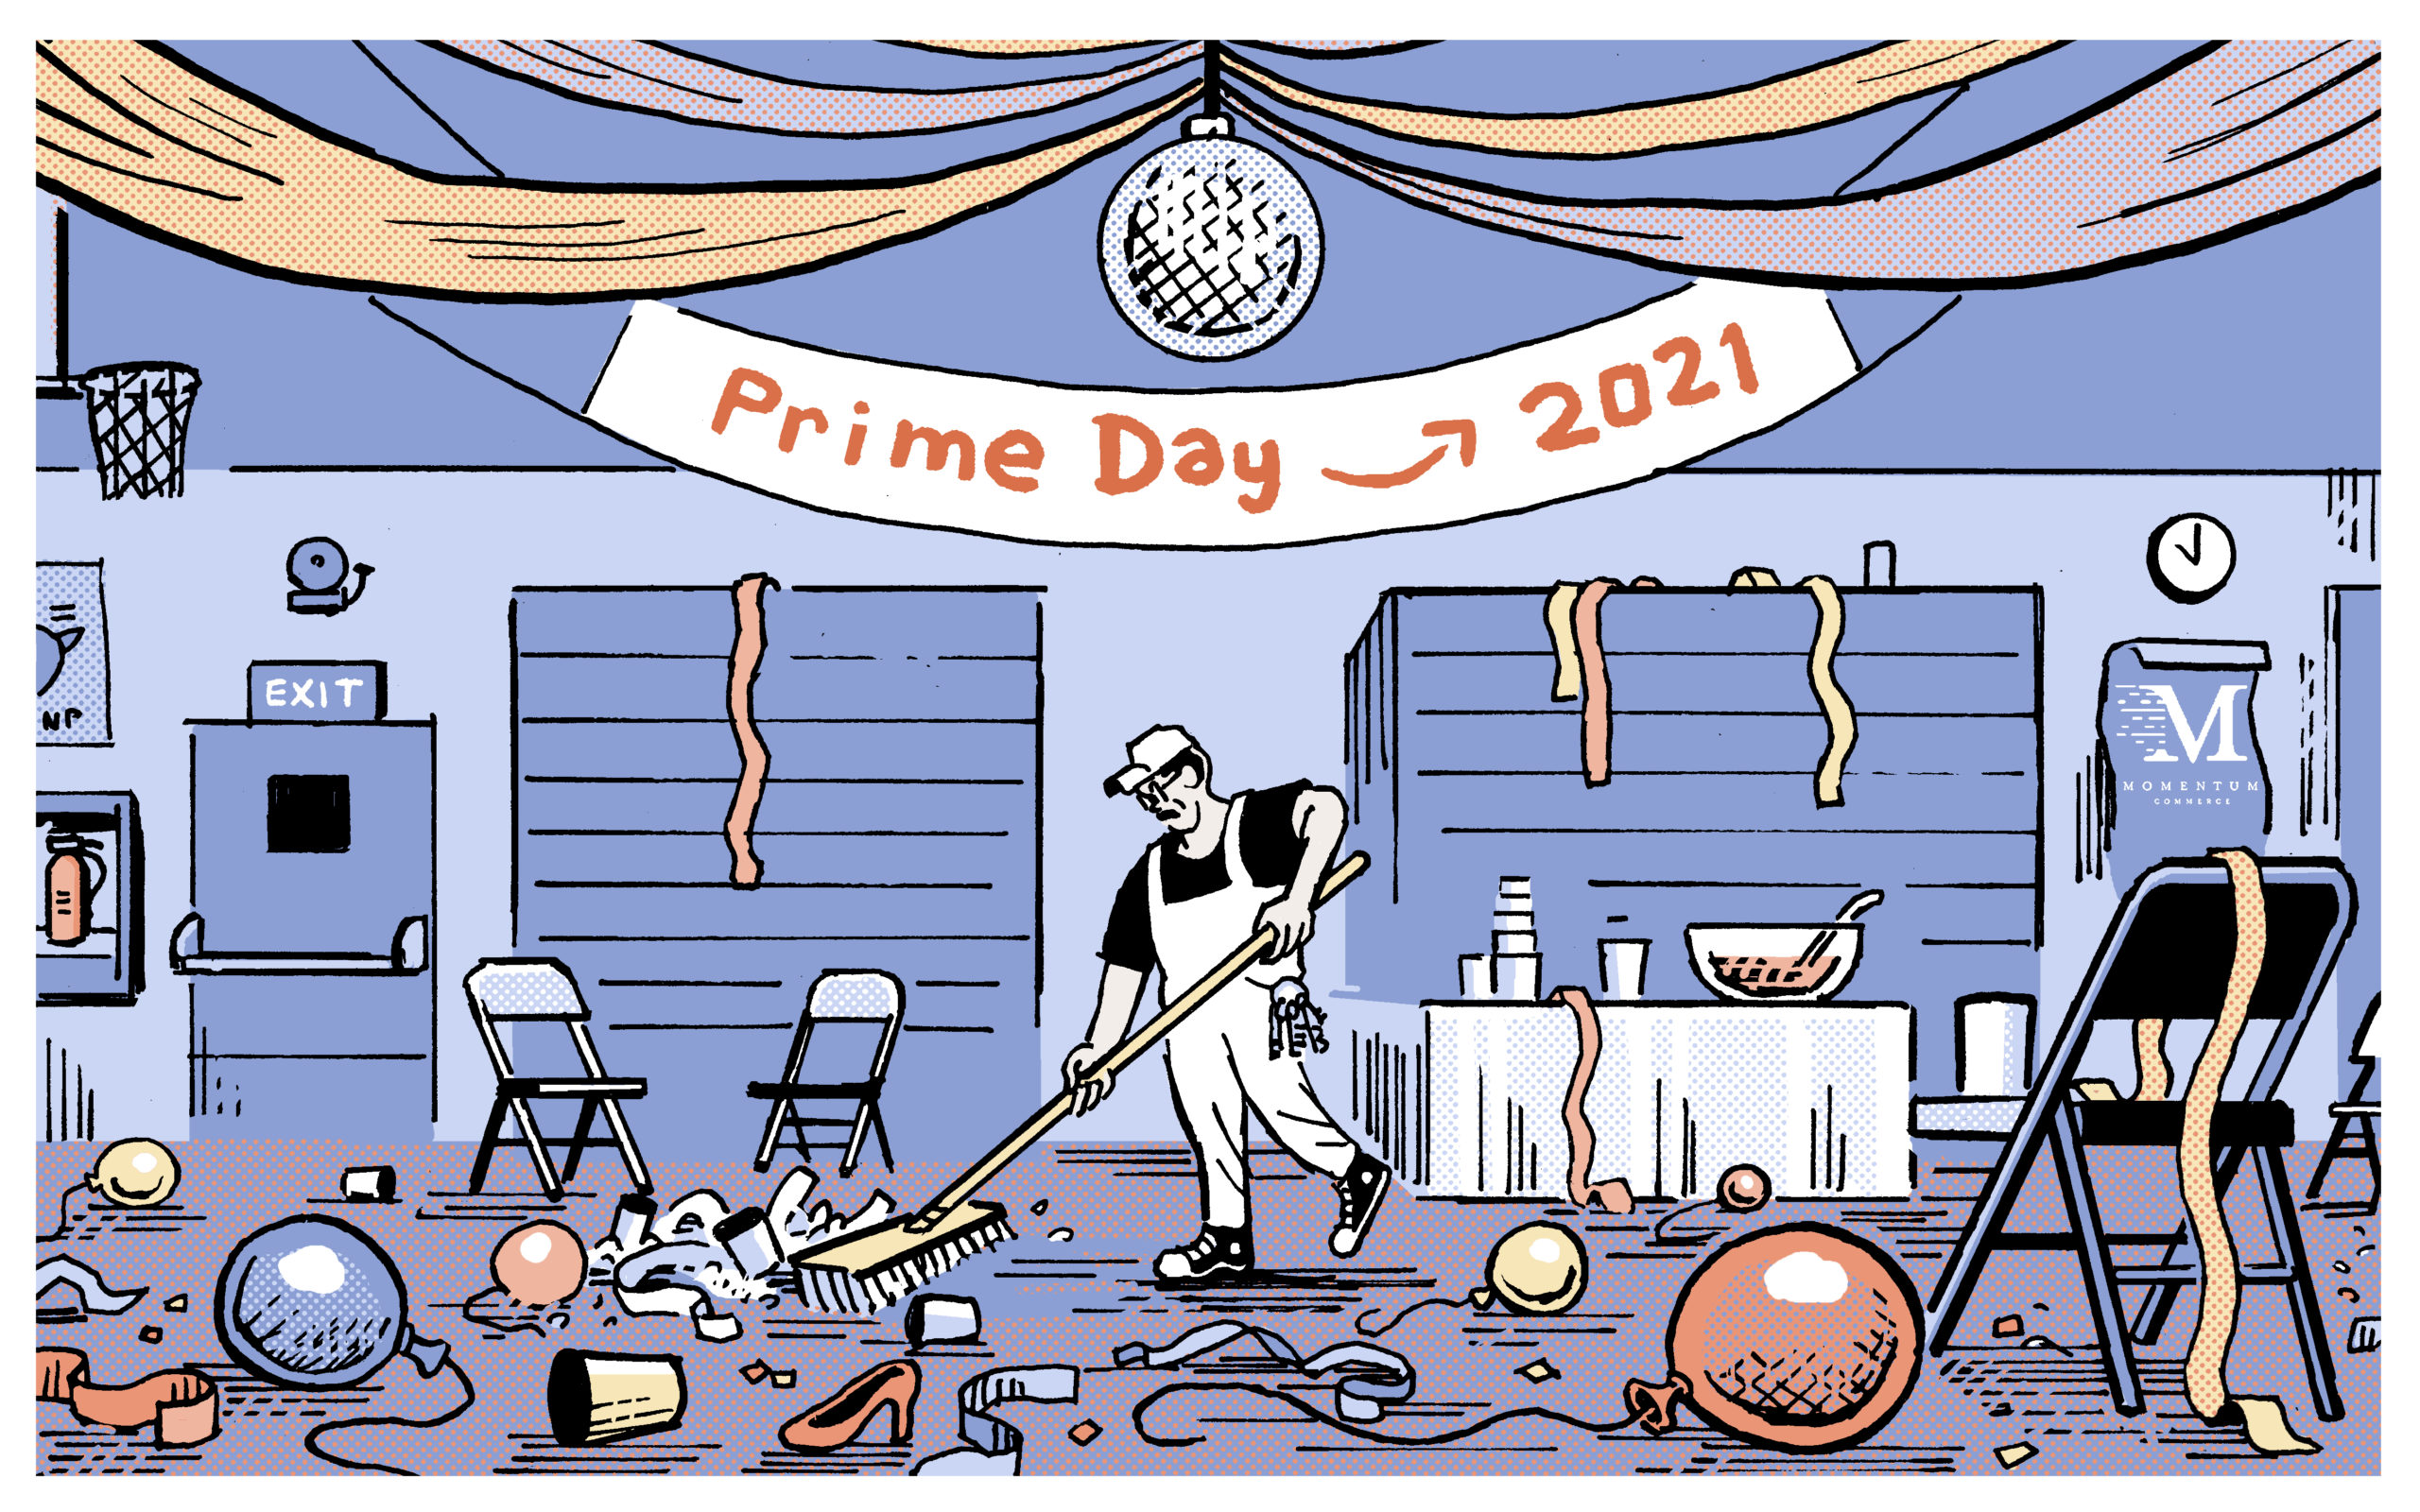 Prime Day 2021